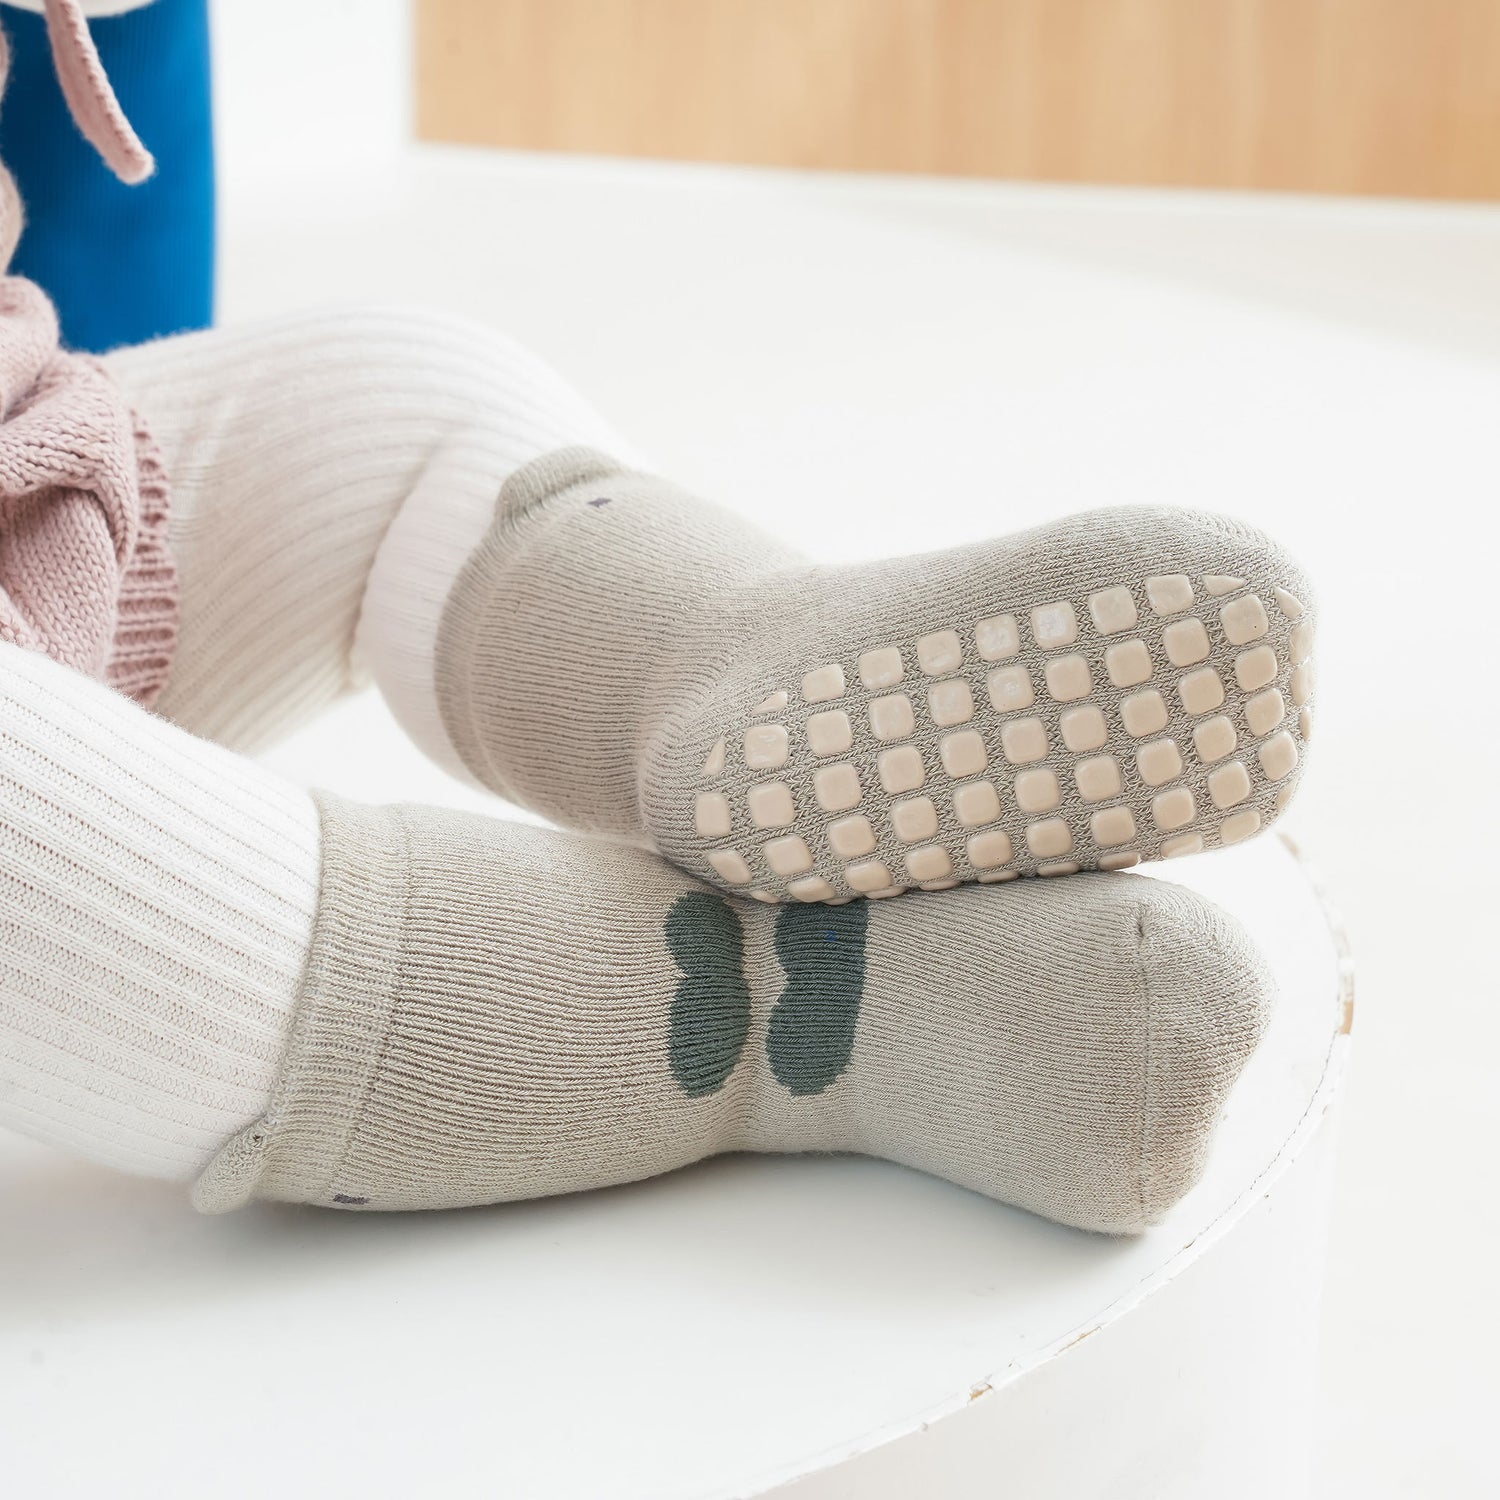 Who Am I: Safe Toddler Grip Socks